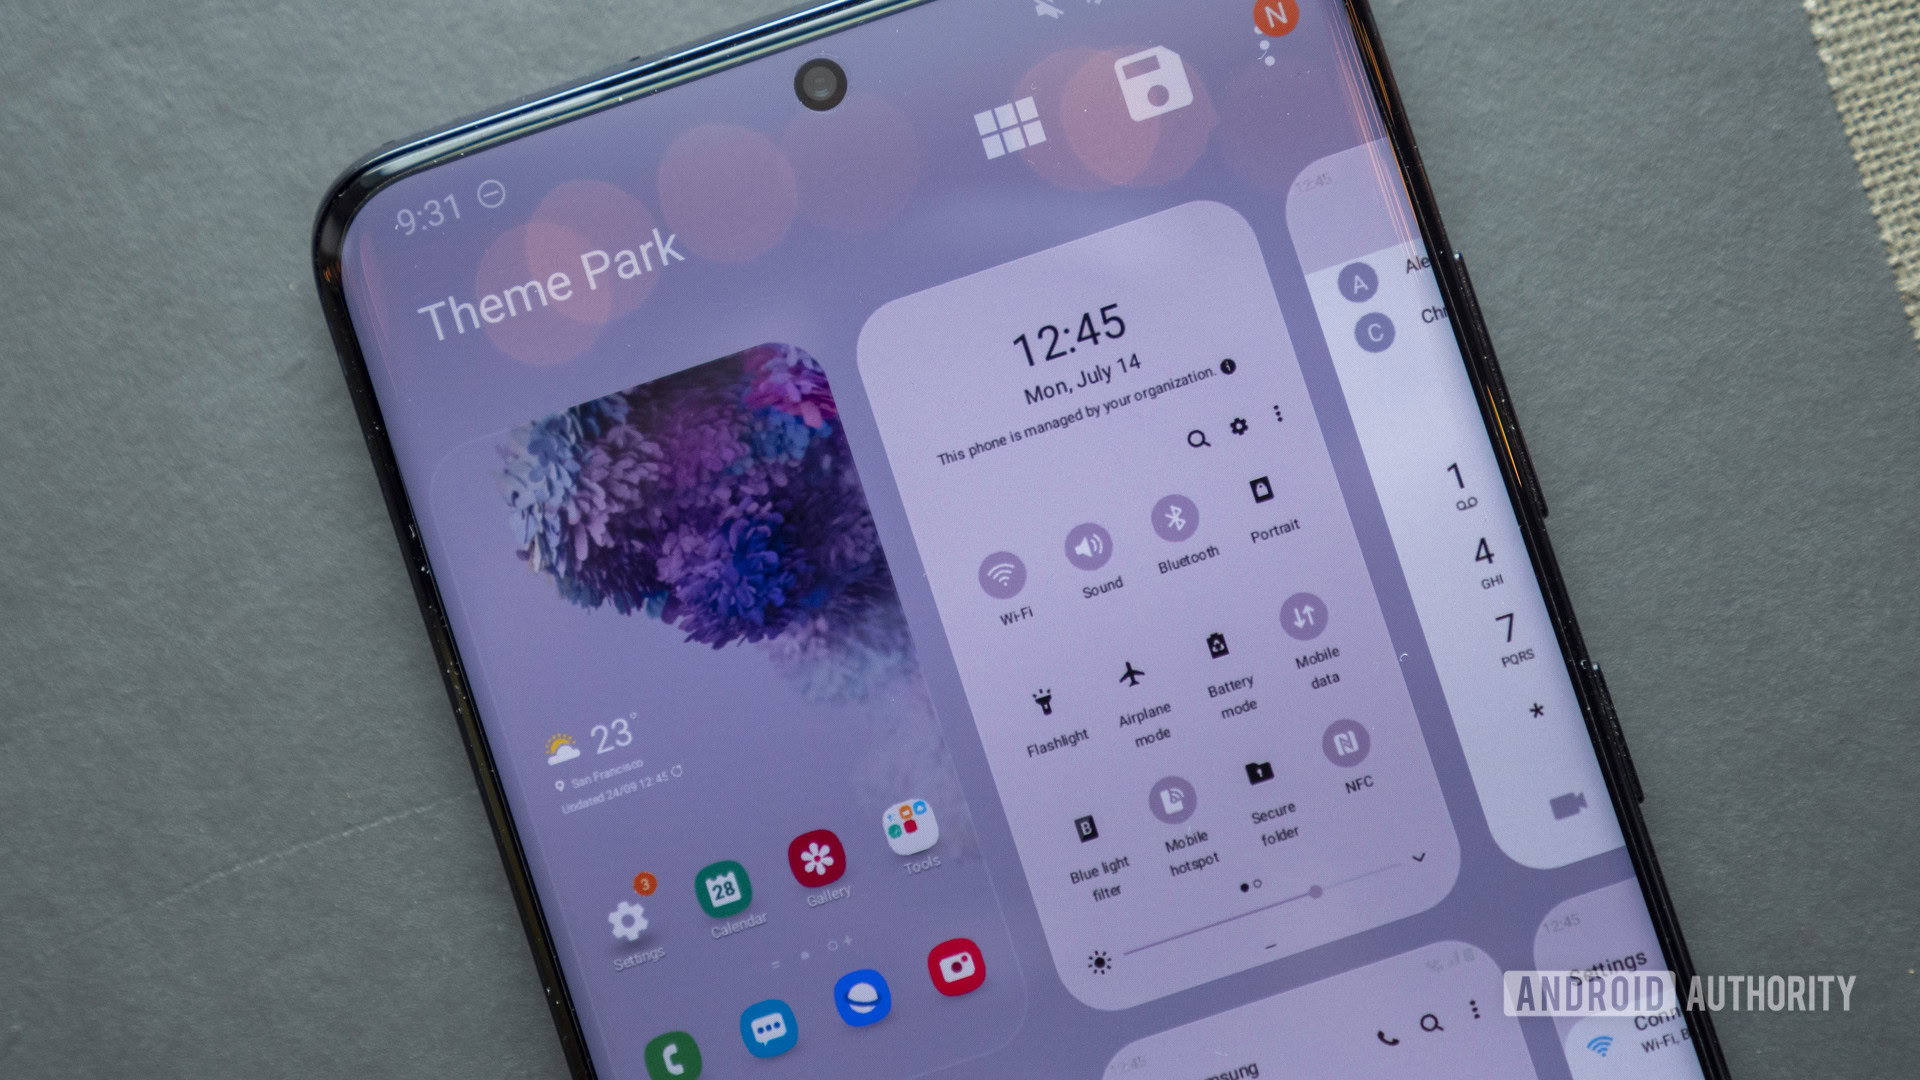 Samsung Theme Park Android là một ứng dụng thú vị dành cho những ai yêu thích tùy chỉnh giao diện điện thoại. Để biết thêm chi tiết và xem các hình ảnh liên quan, hãy dành chút thời gian để khám phá nhé!